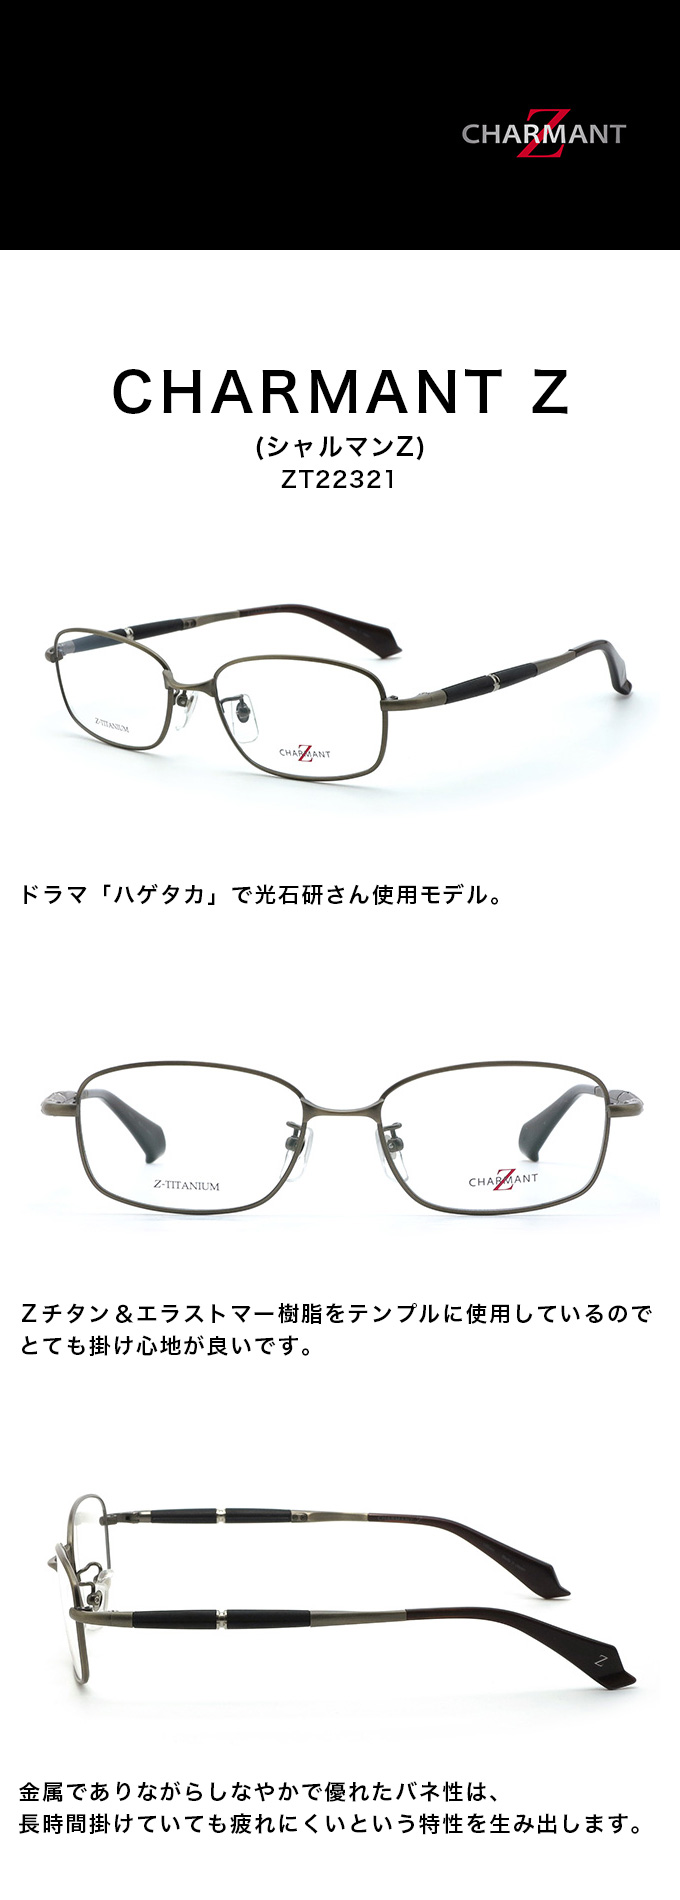 CHARMANT Z シャルマンZ ZT22321 カラー AW(グレー)メンズ メガネ サングラス 眼鏡ドラマ「ハゲタカ」で光石研さん使用モデル【ありがとう】【店頭受取対応商品】  メガネ メガネソムリエ 山下眼鏡店 3GLASS e-shop